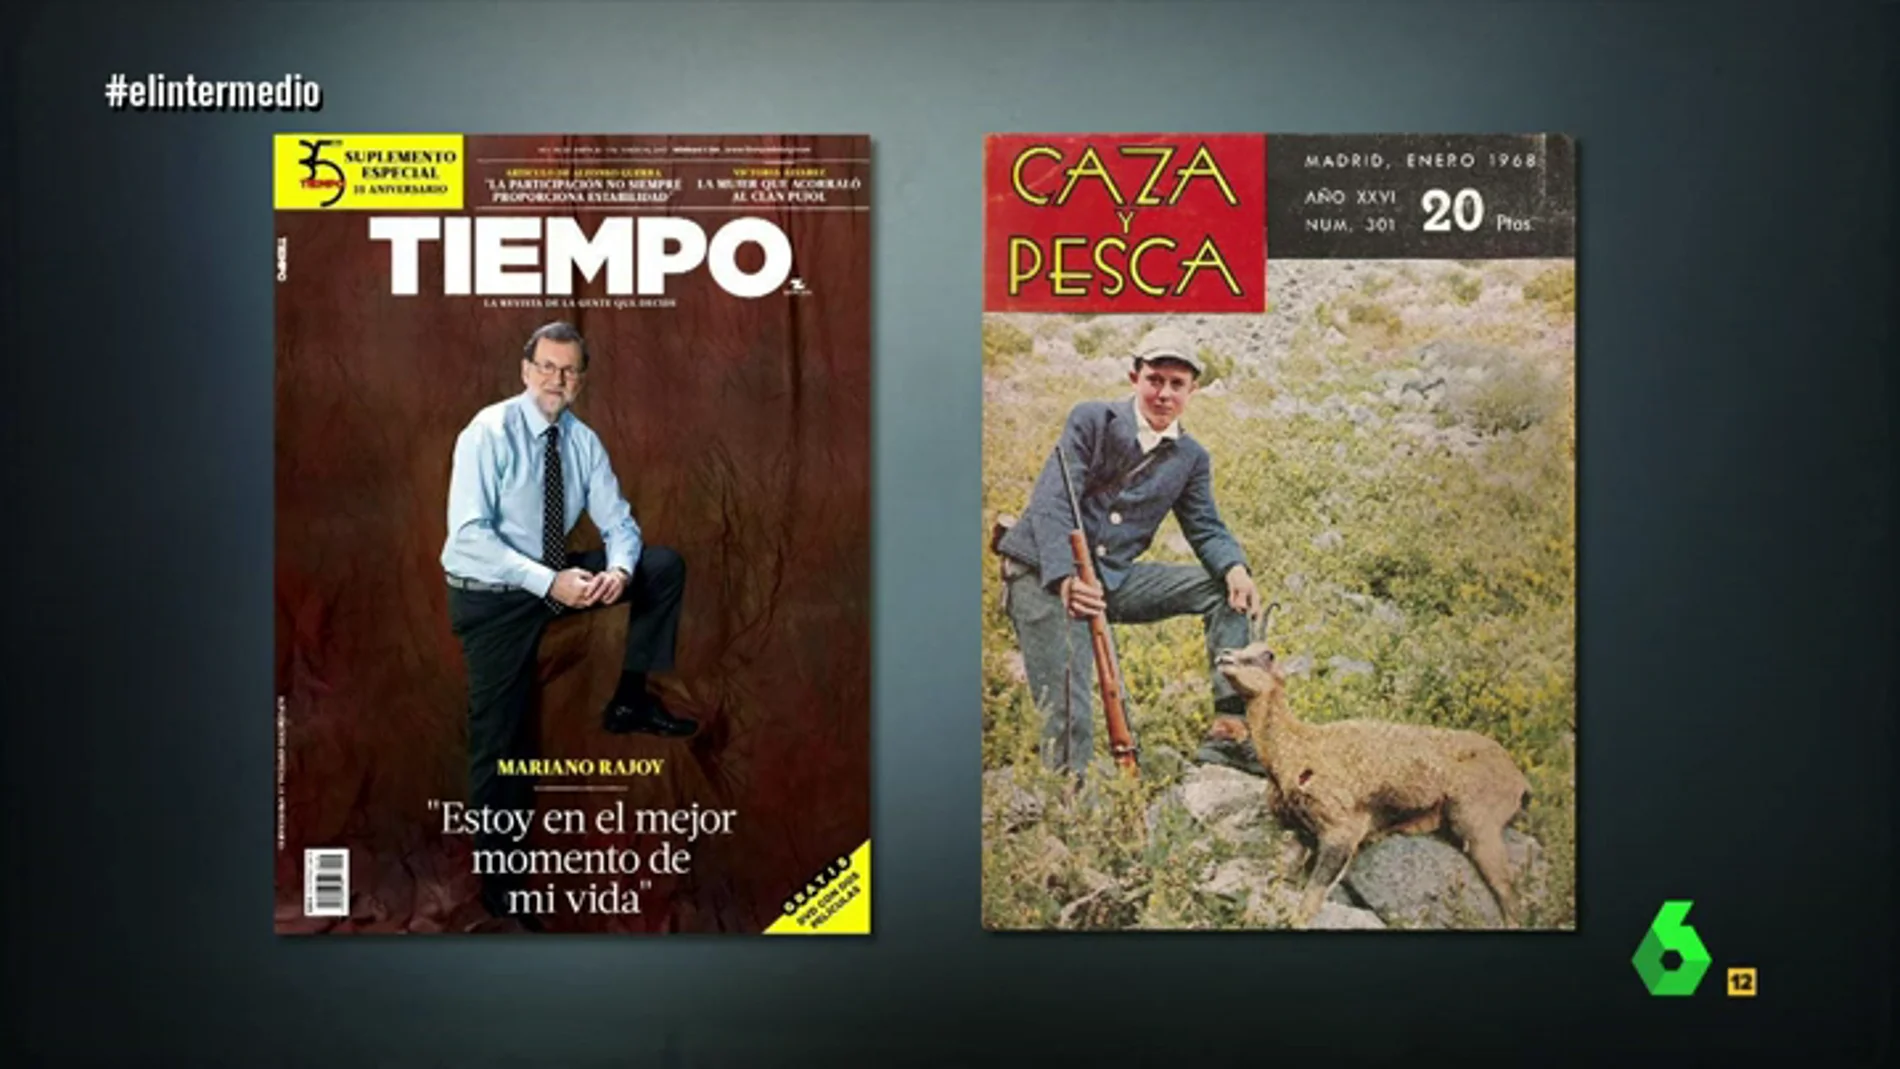 Mariano Rajoy posando en revistas de tendencias